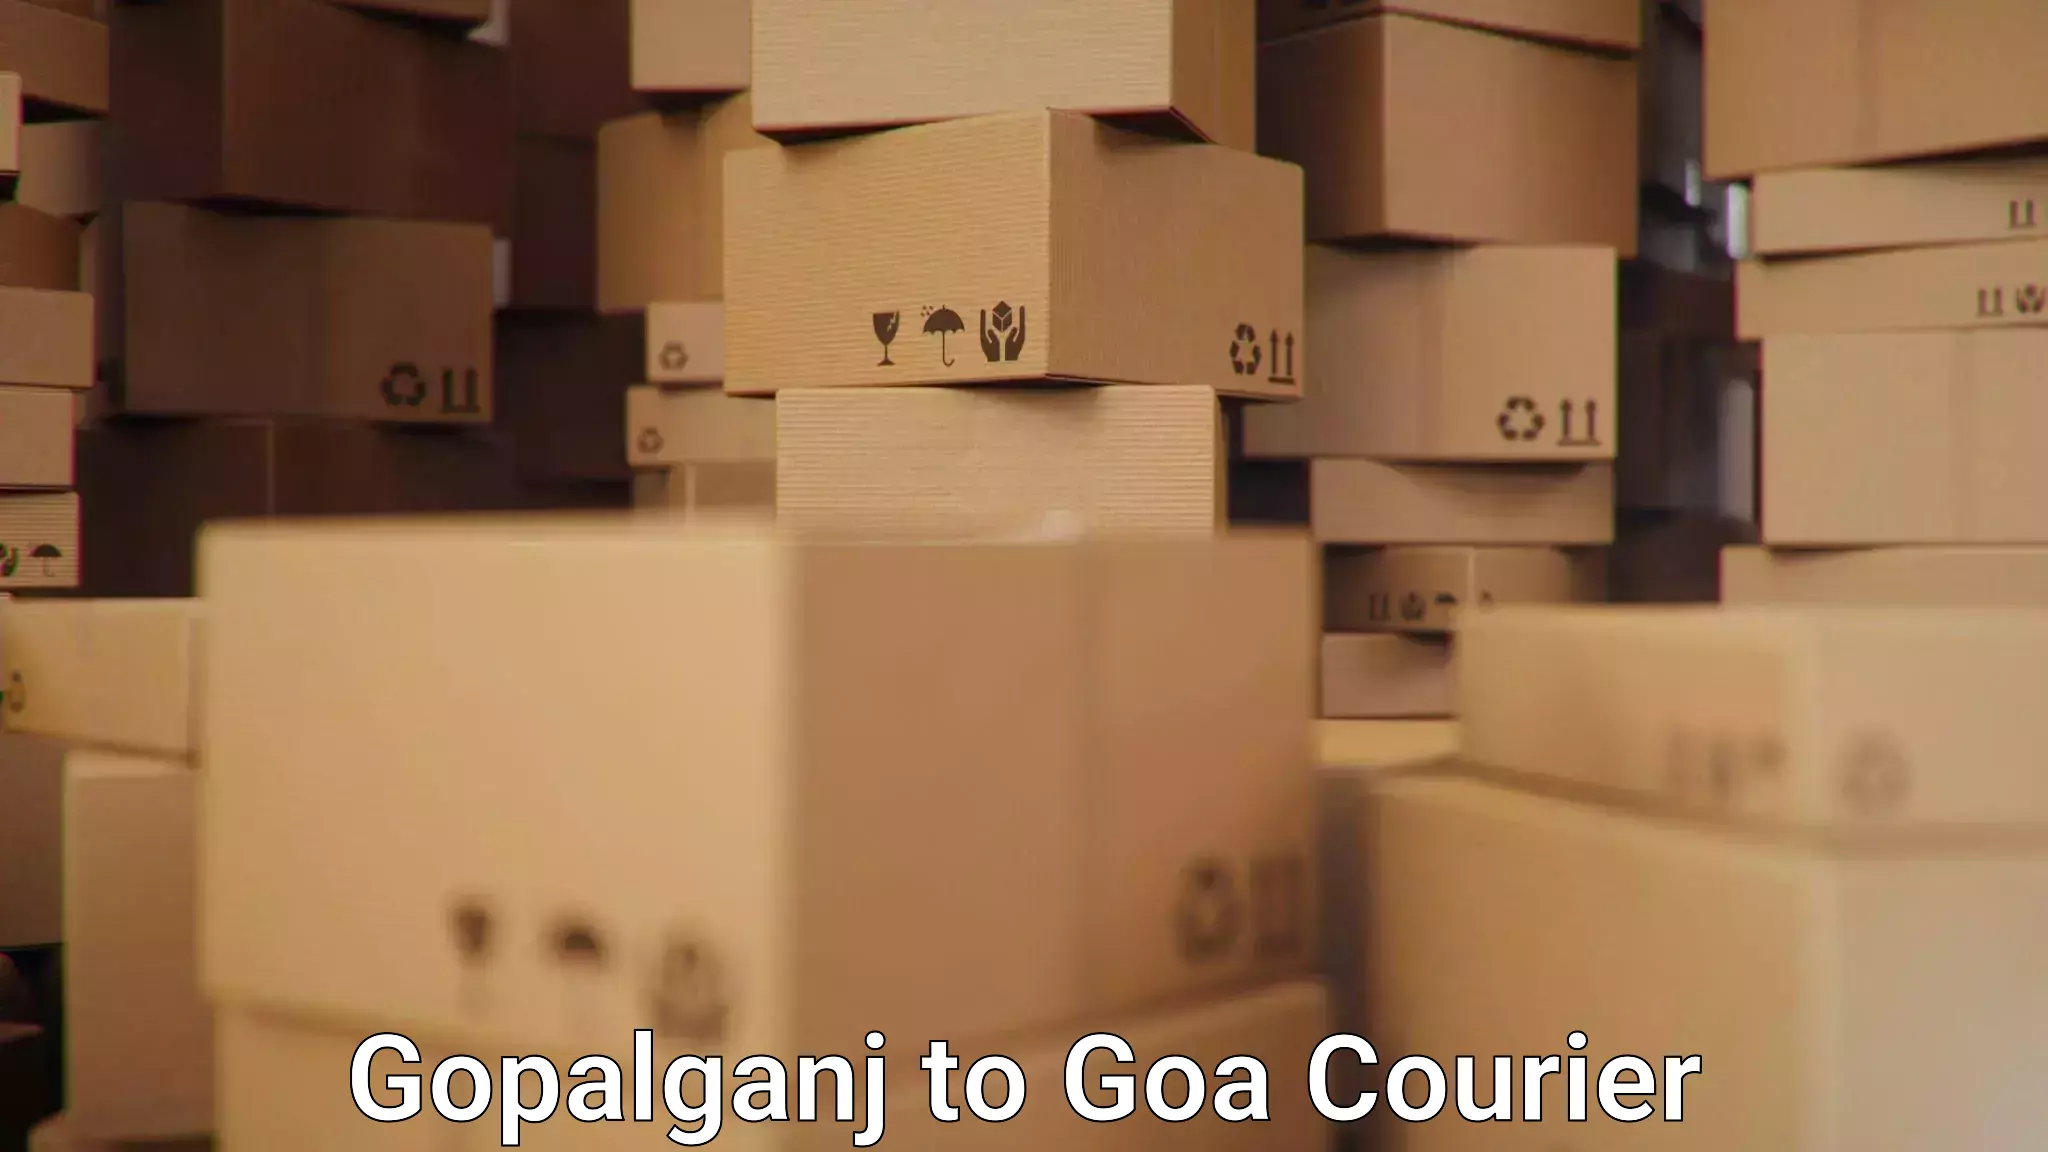 Next-day freight services Gopalganj to Goa